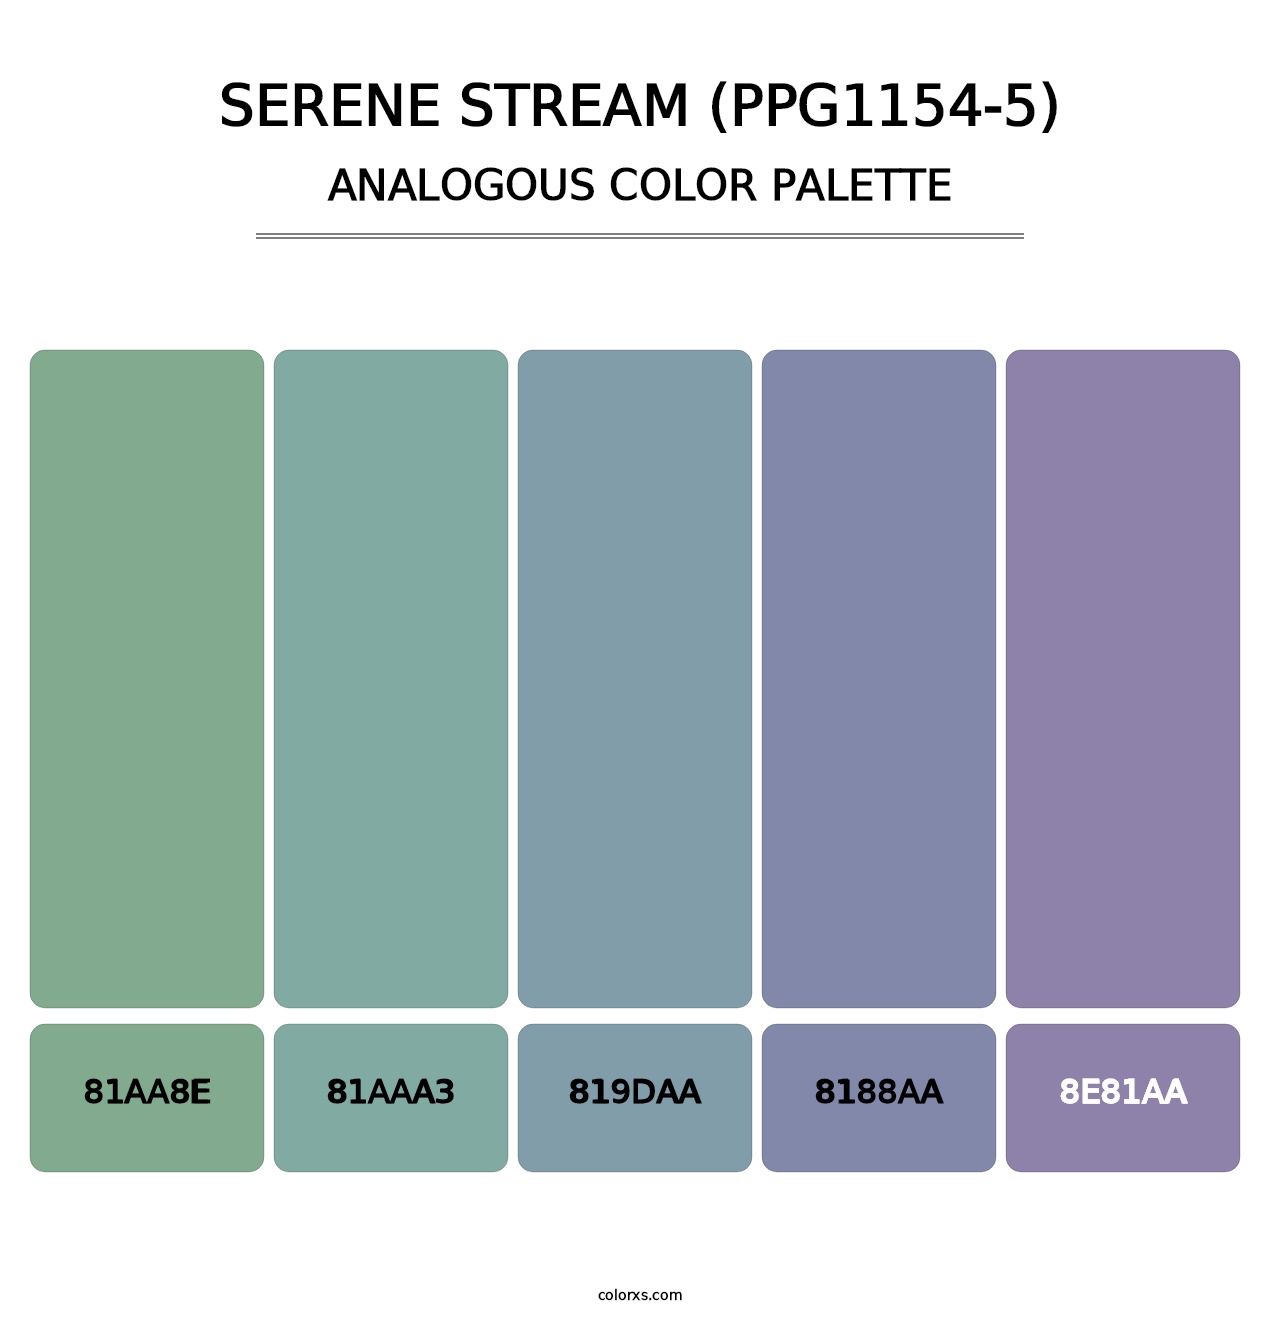 Serene Stream (PPG1154-5) - Analogous Color Palette